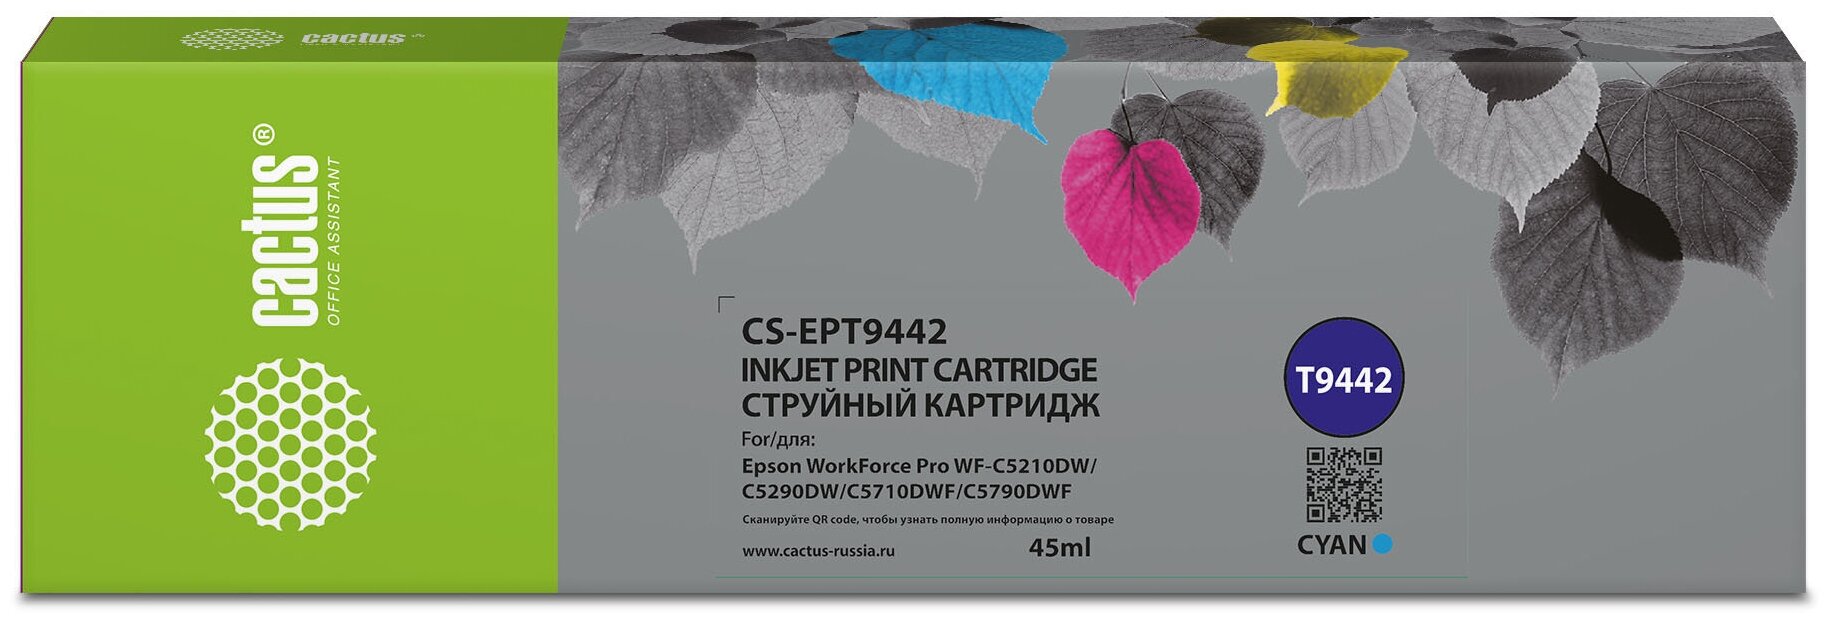 Картридж T9442 Cyan для принтера Эпсон, Epson WorkForce Pro WF-C5710 DWF; WF-C5790 DWF